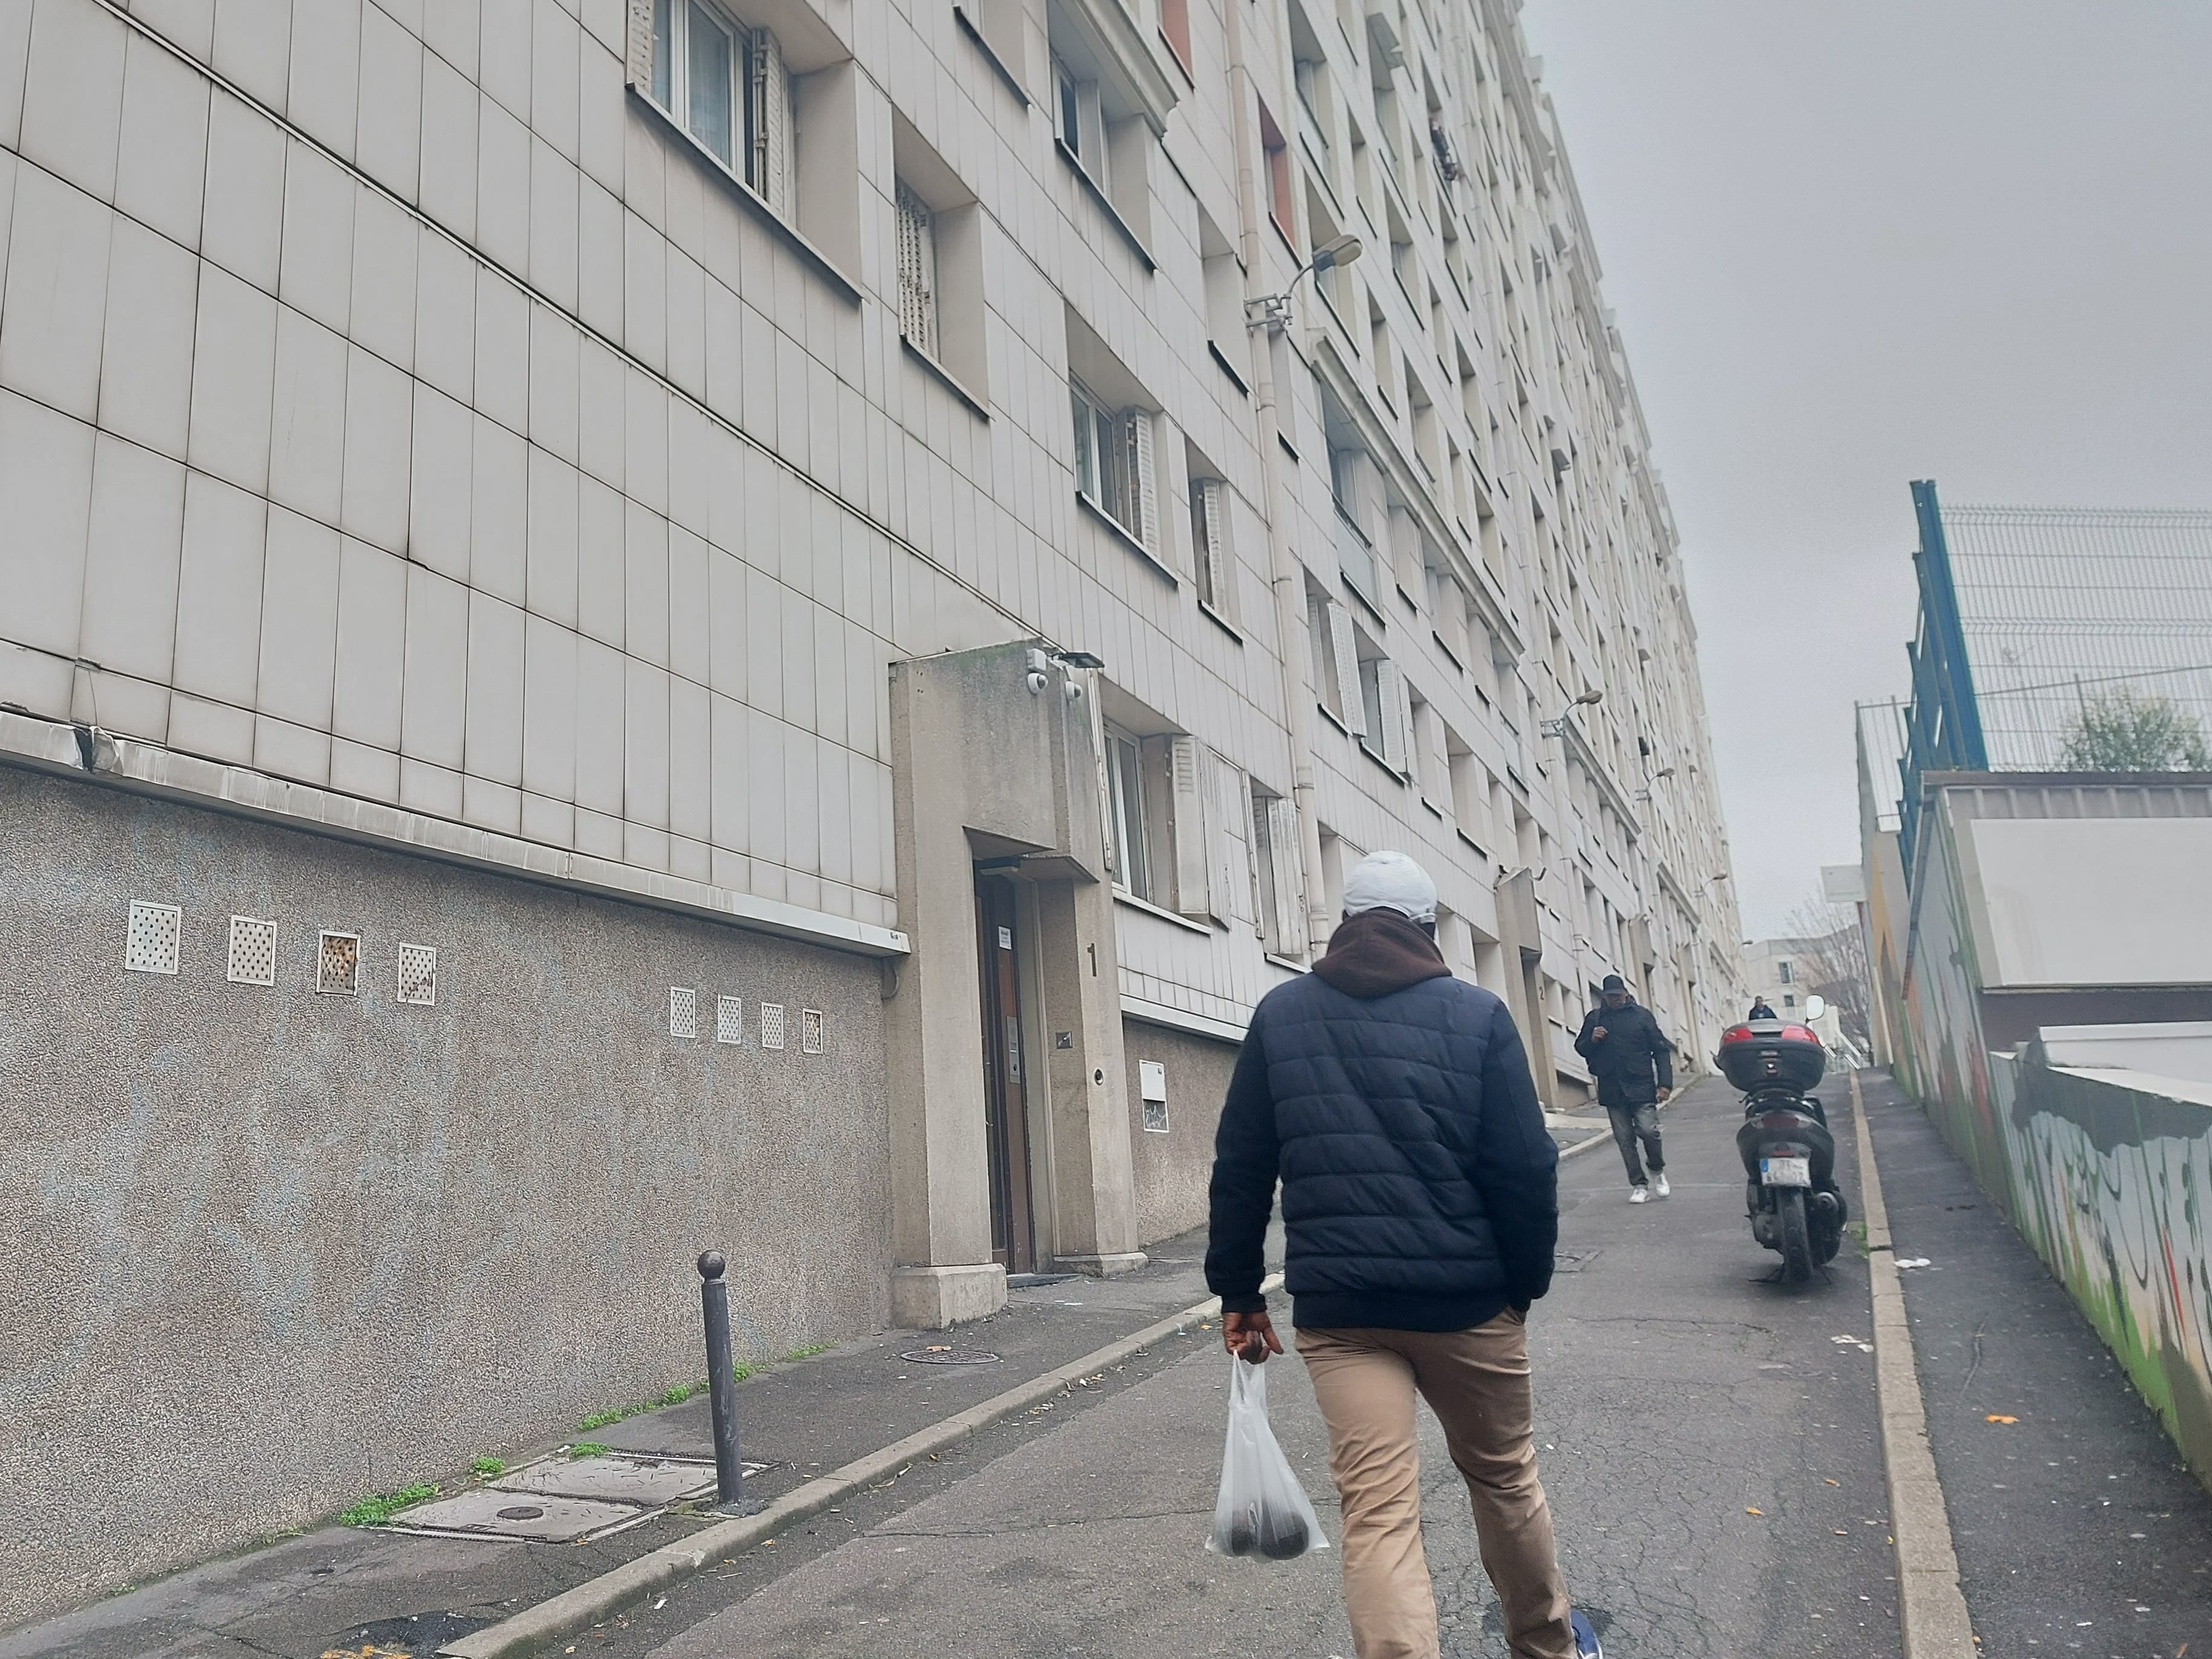 Paris (XVIIe), samedi. Au 190 bis de l'avenue de Clichy, les locataires s'estiment abandonnés par leur bailleur social. Ils attendent une action rapide de sa part. LP/Cécile Beaulieu